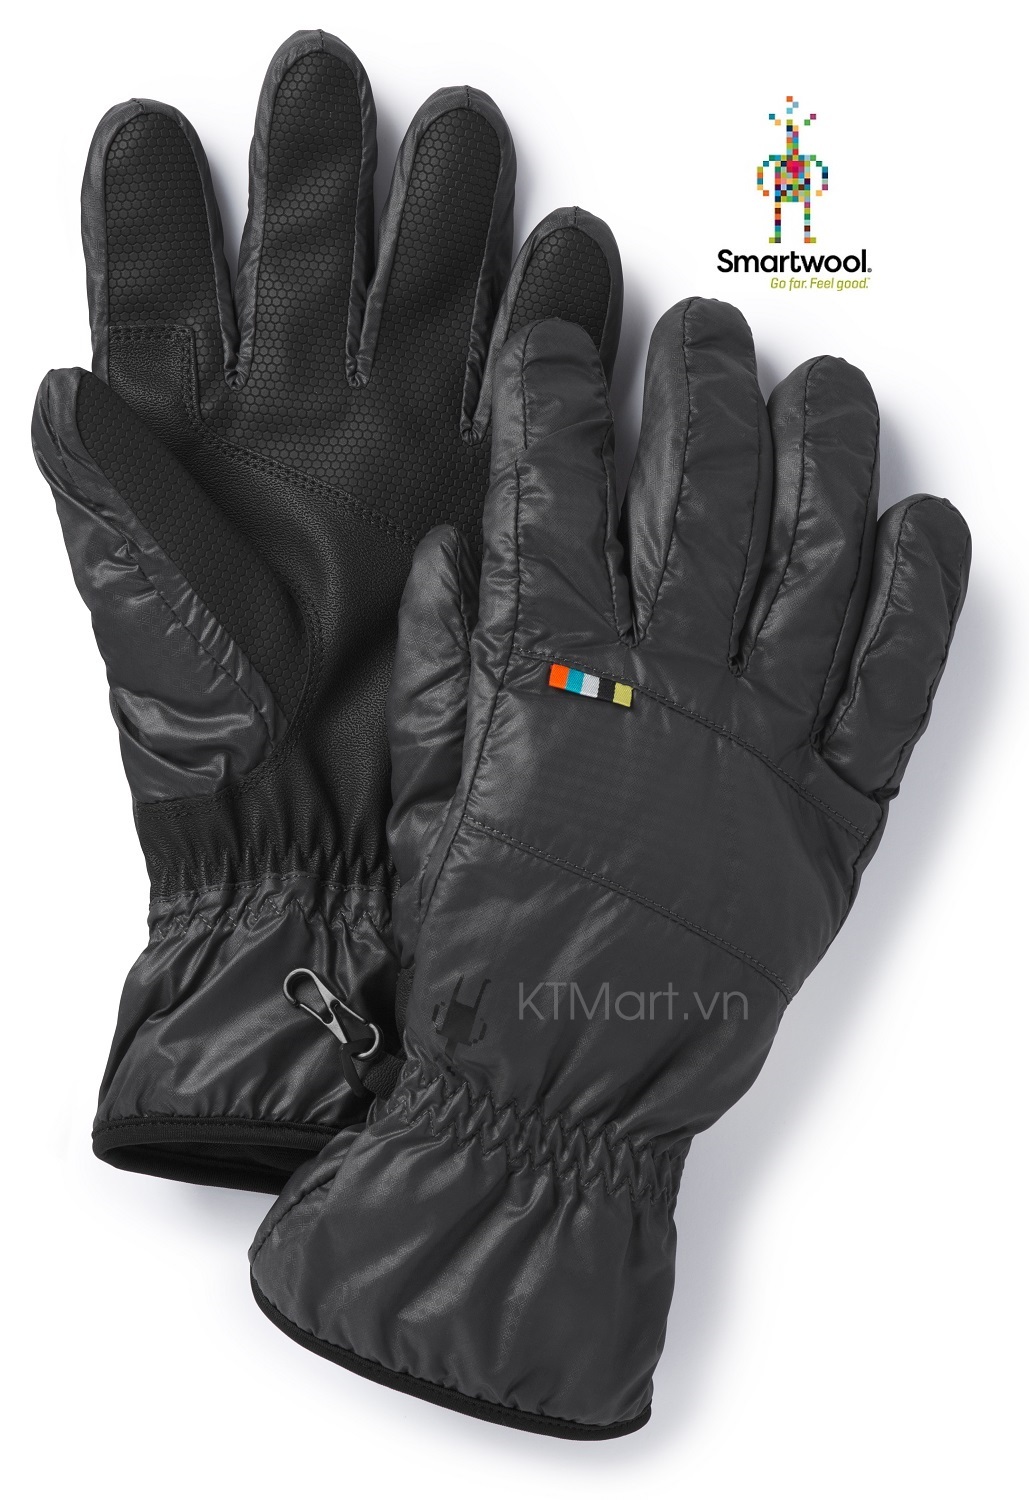 Smartwool SmartLoft Gloves SW019003 Smartwool size M